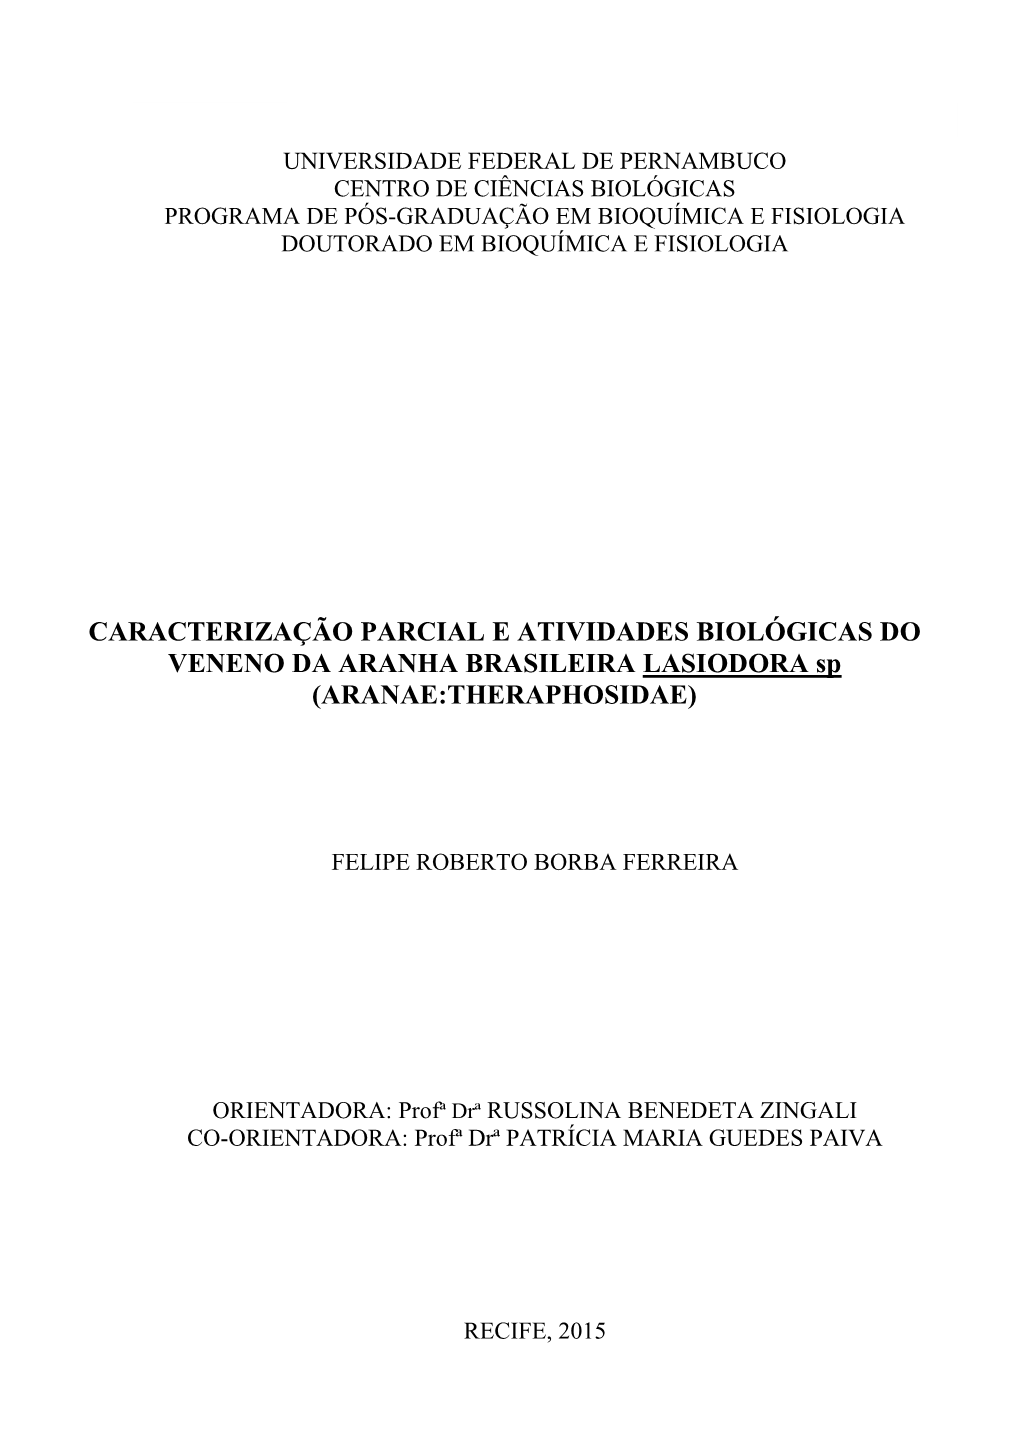 CARACTERIZAÇÃO PARCIAL E ATIVIDADES BIOLÓGICAS DO VENENO DA ARANHA BRASILEIRA LASIODORA Sp (ARANAE:THERAPHOSIDAE)